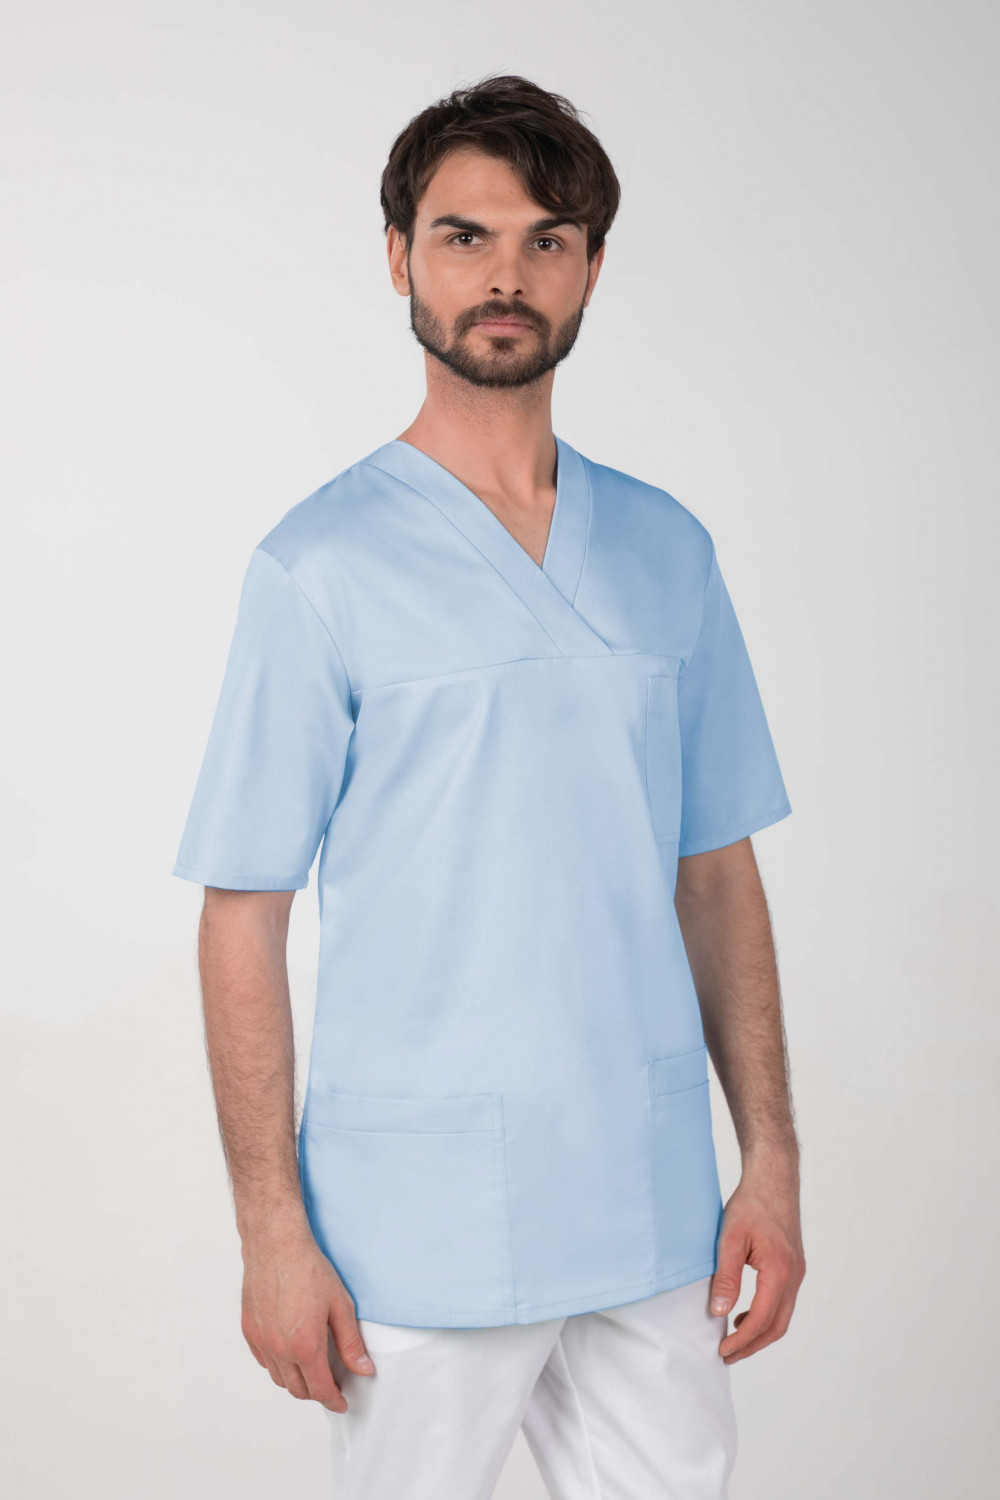 M-074C Bluza medyczna chirurgiczna męska błękit